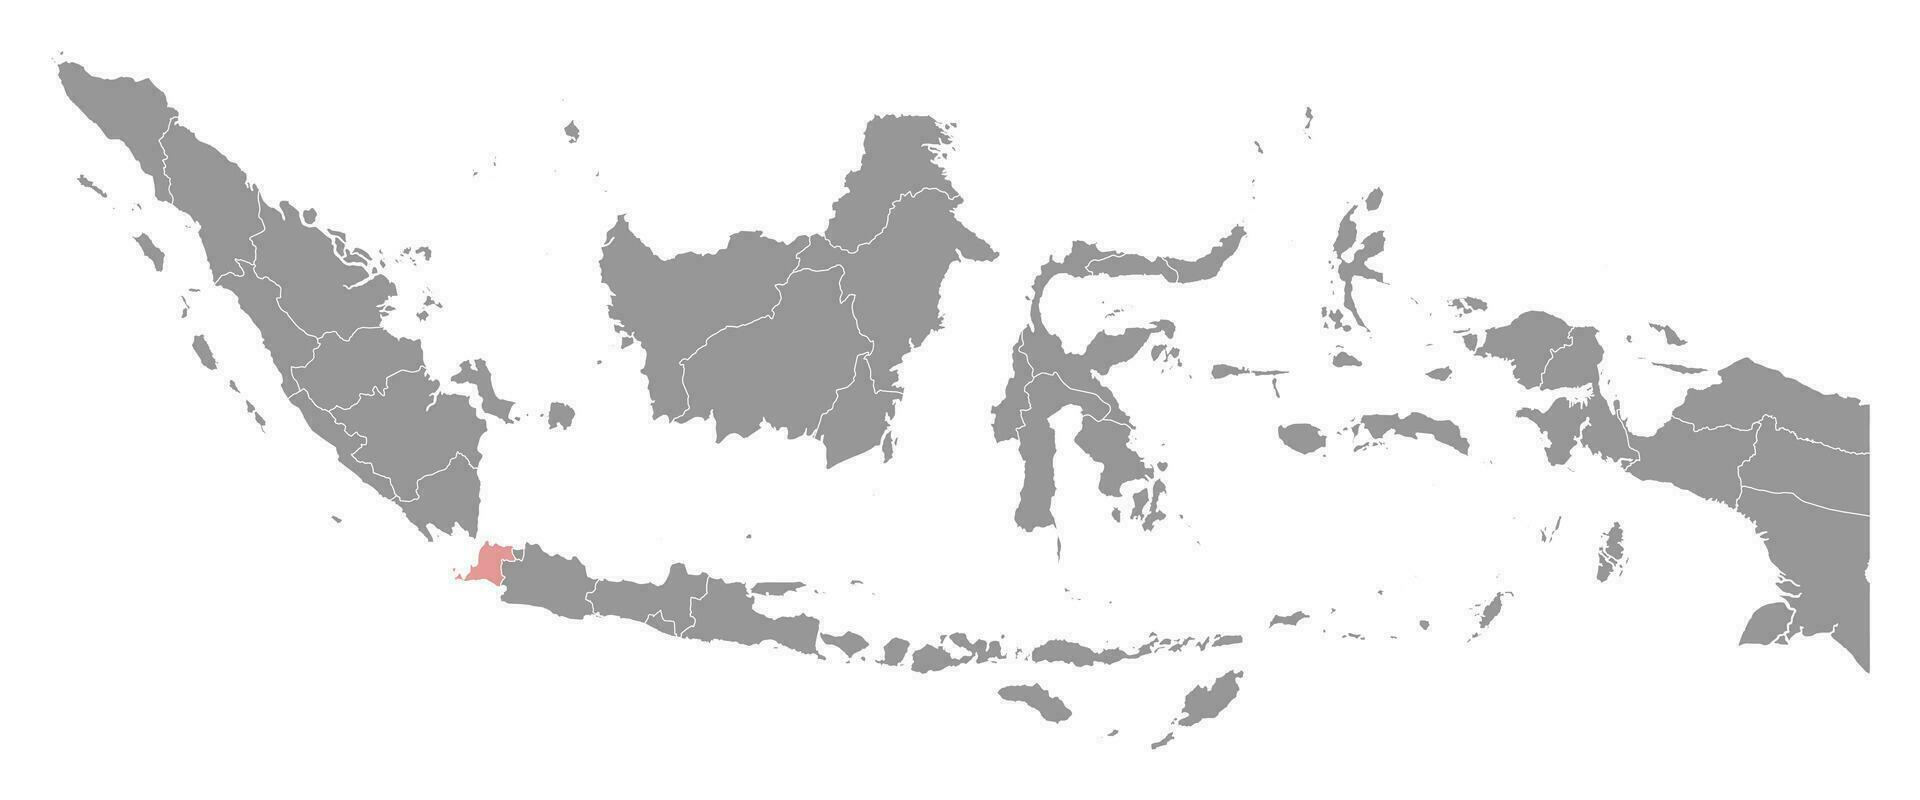 Banten província mapa, administrativo divisão do Indonésia. vetor ilustração.